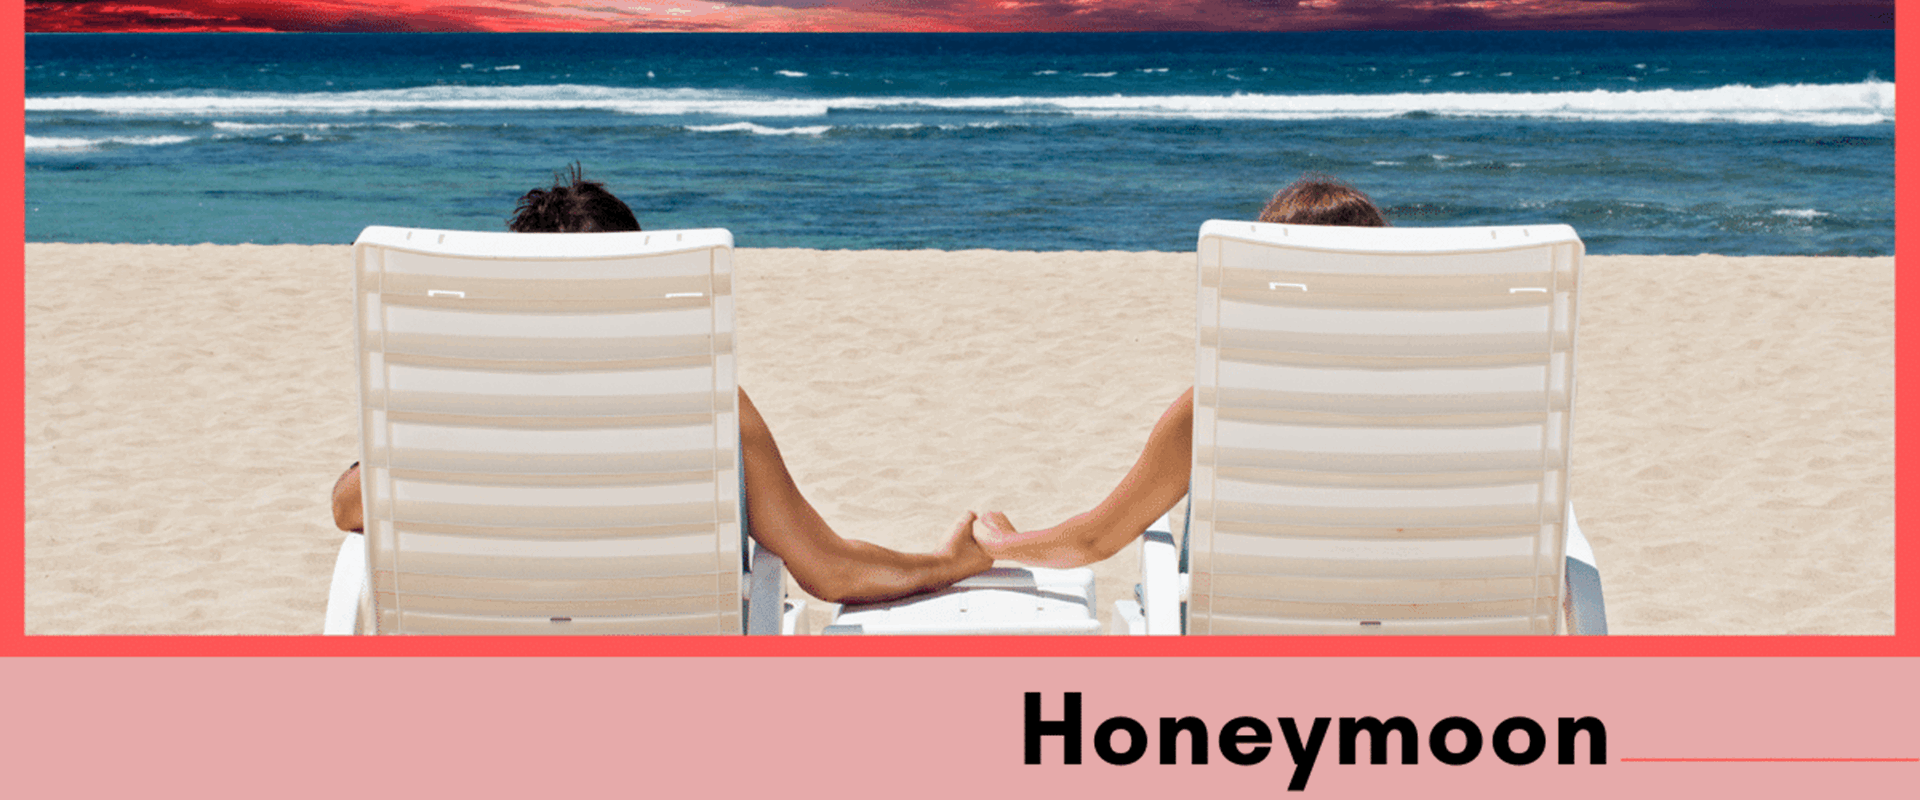 Insure Your Honeymoon